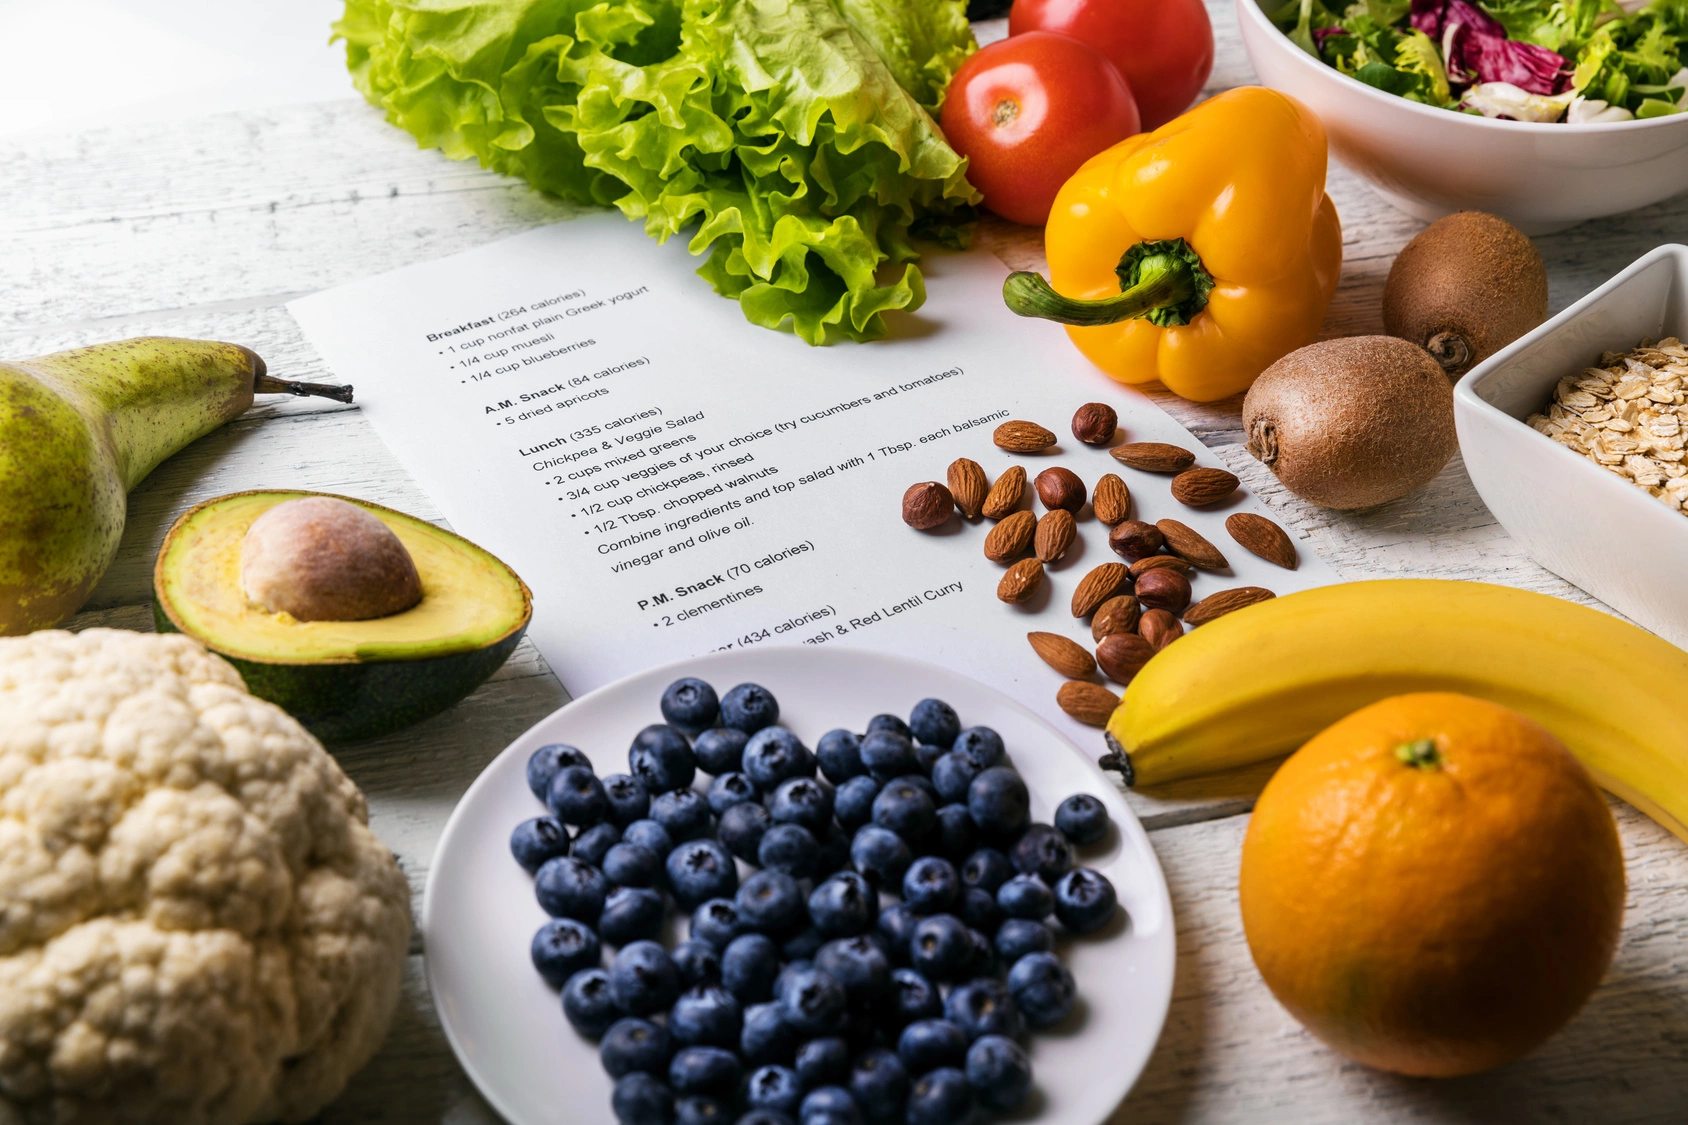 Dieta OXY - na czym polega i jak ją stosować? Owoce, warzywa i orzechy leżą na stole obok jadłospisu.